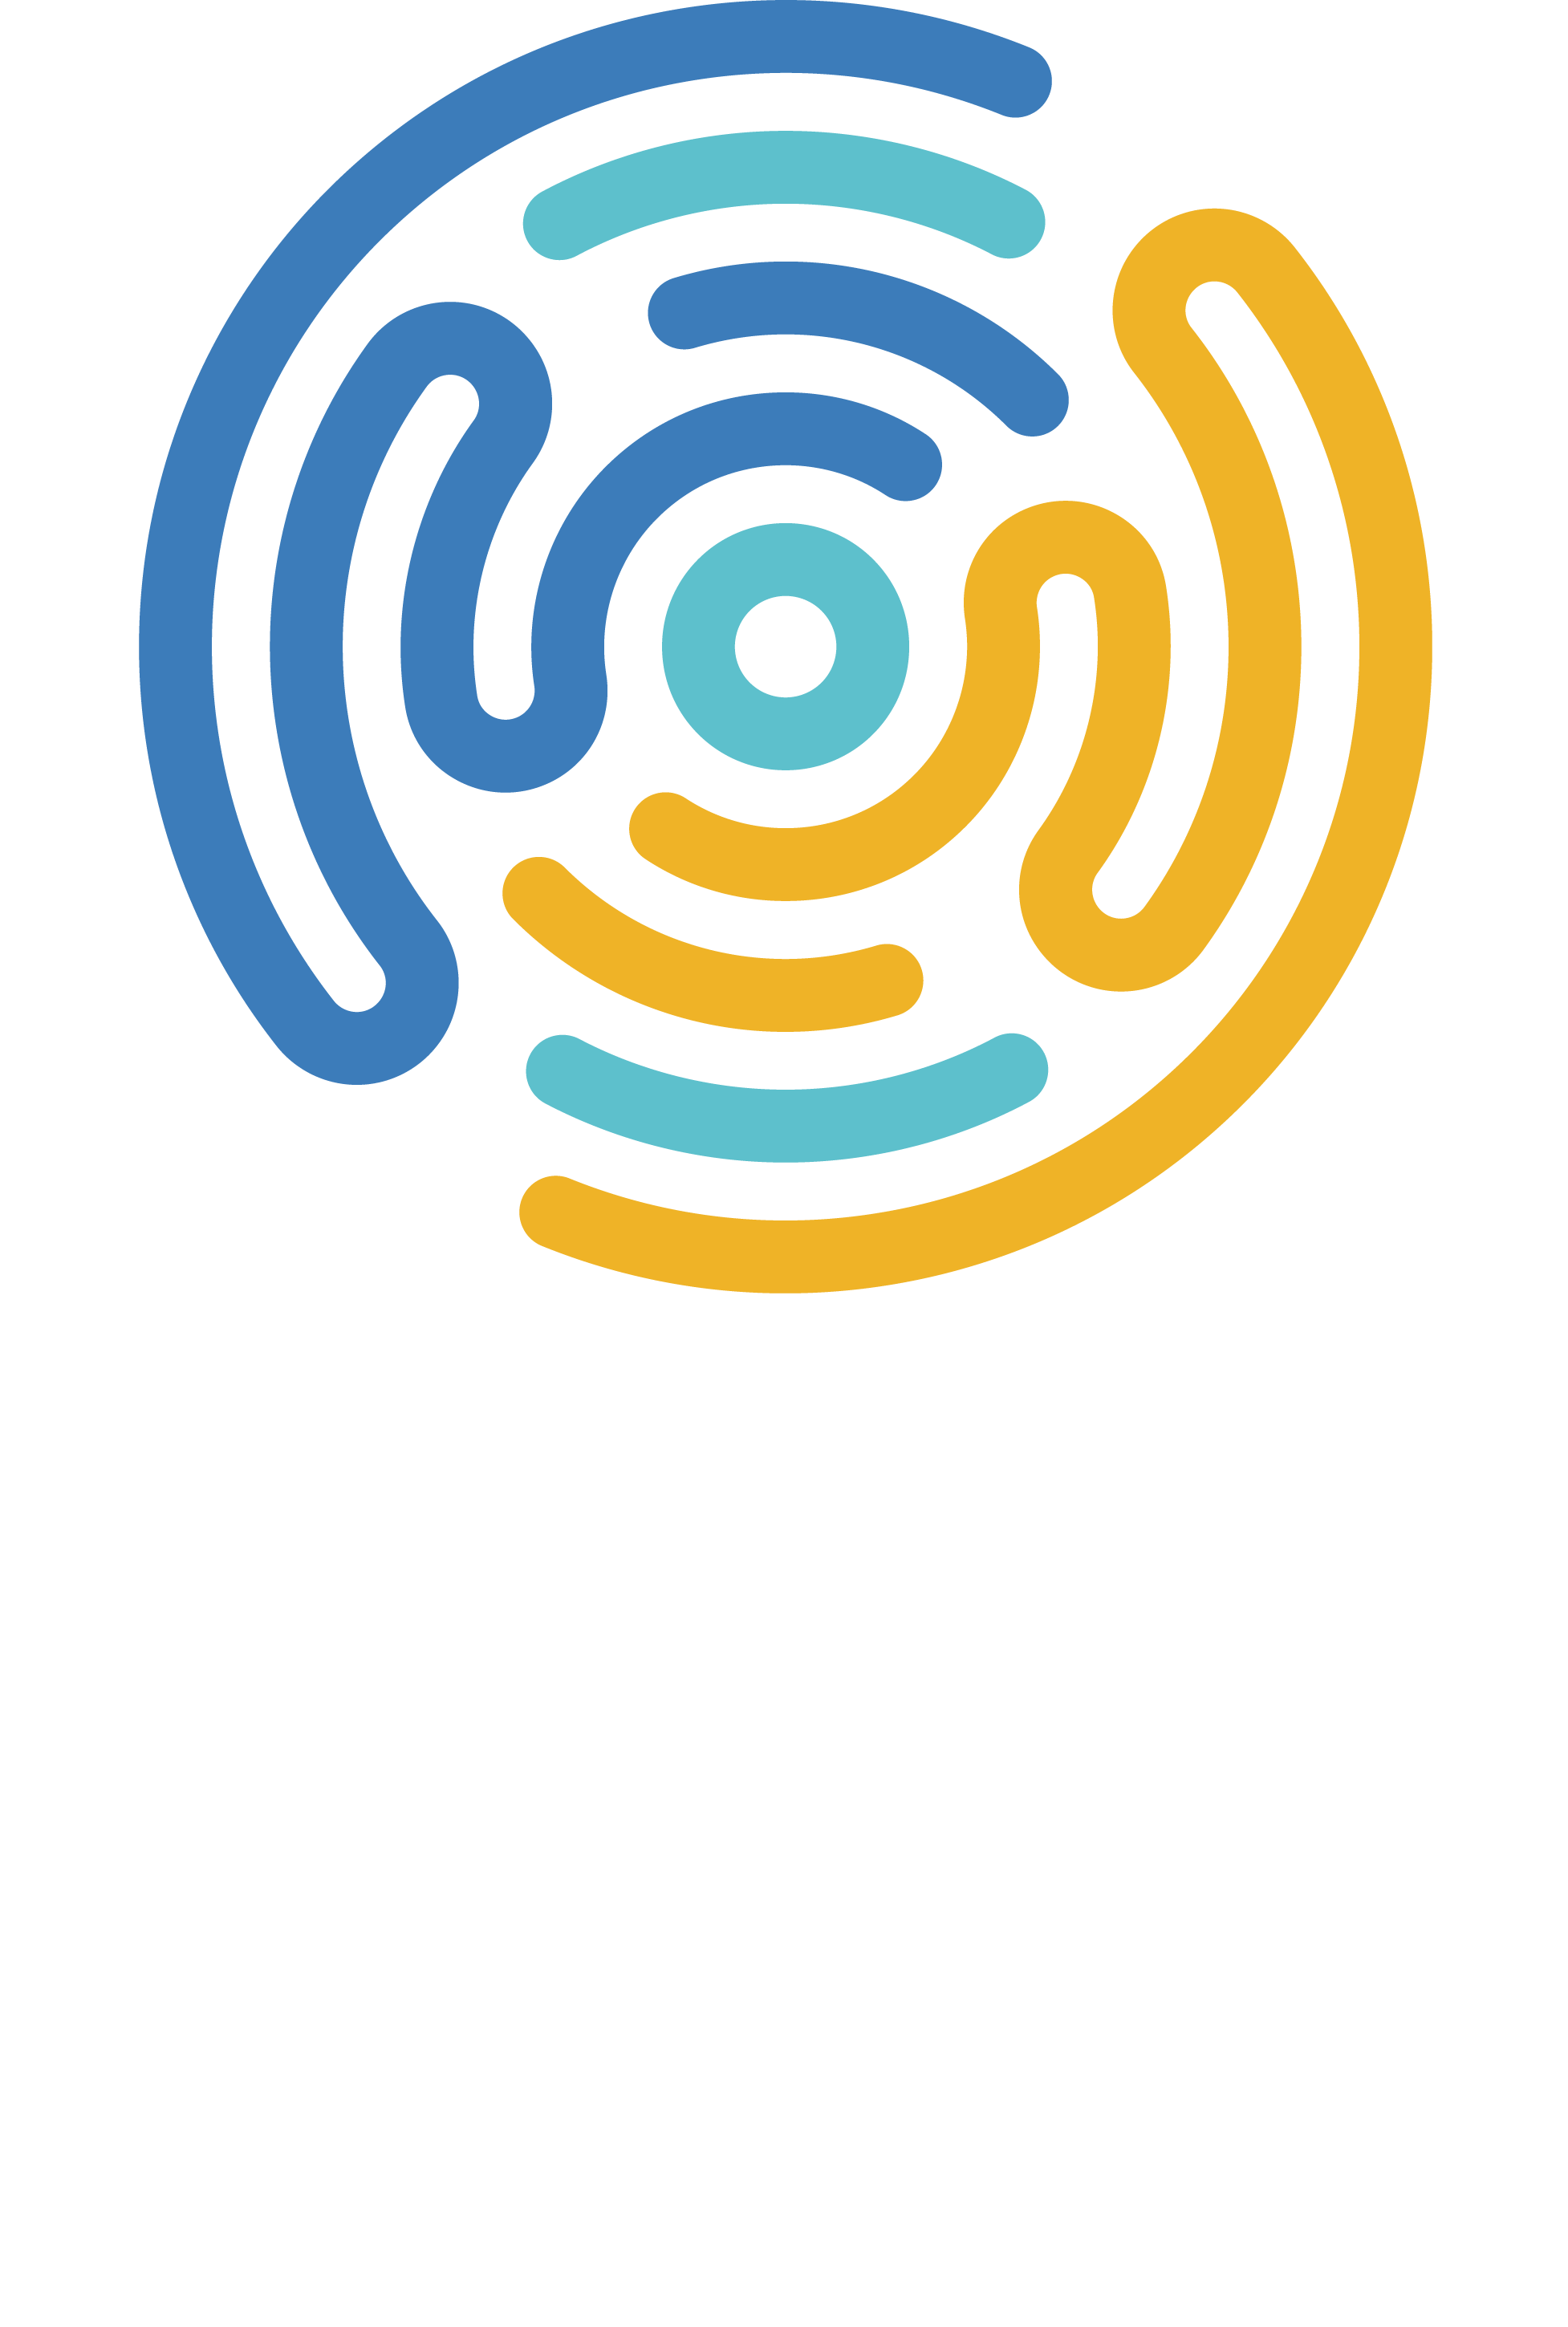 HCC Logo Design